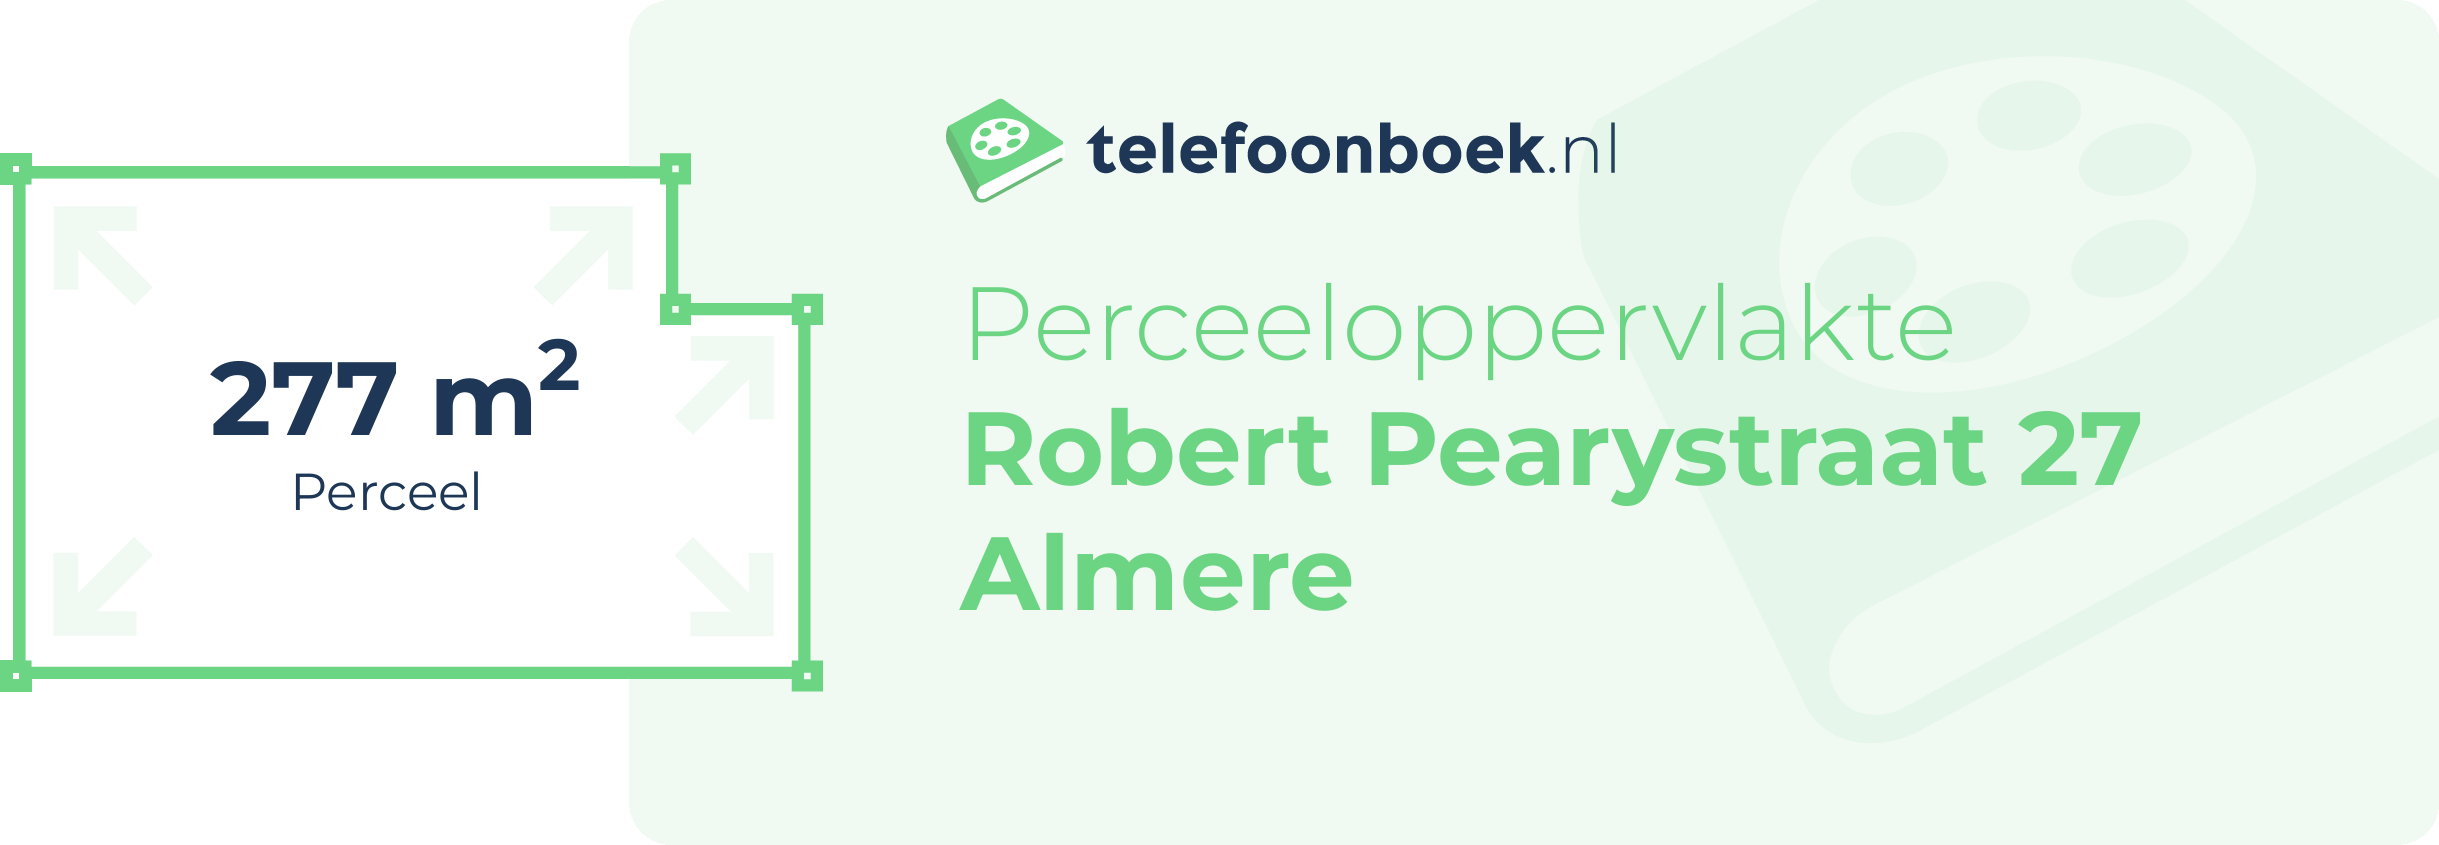 Perceeloppervlakte Robert Pearystraat 27 Almere